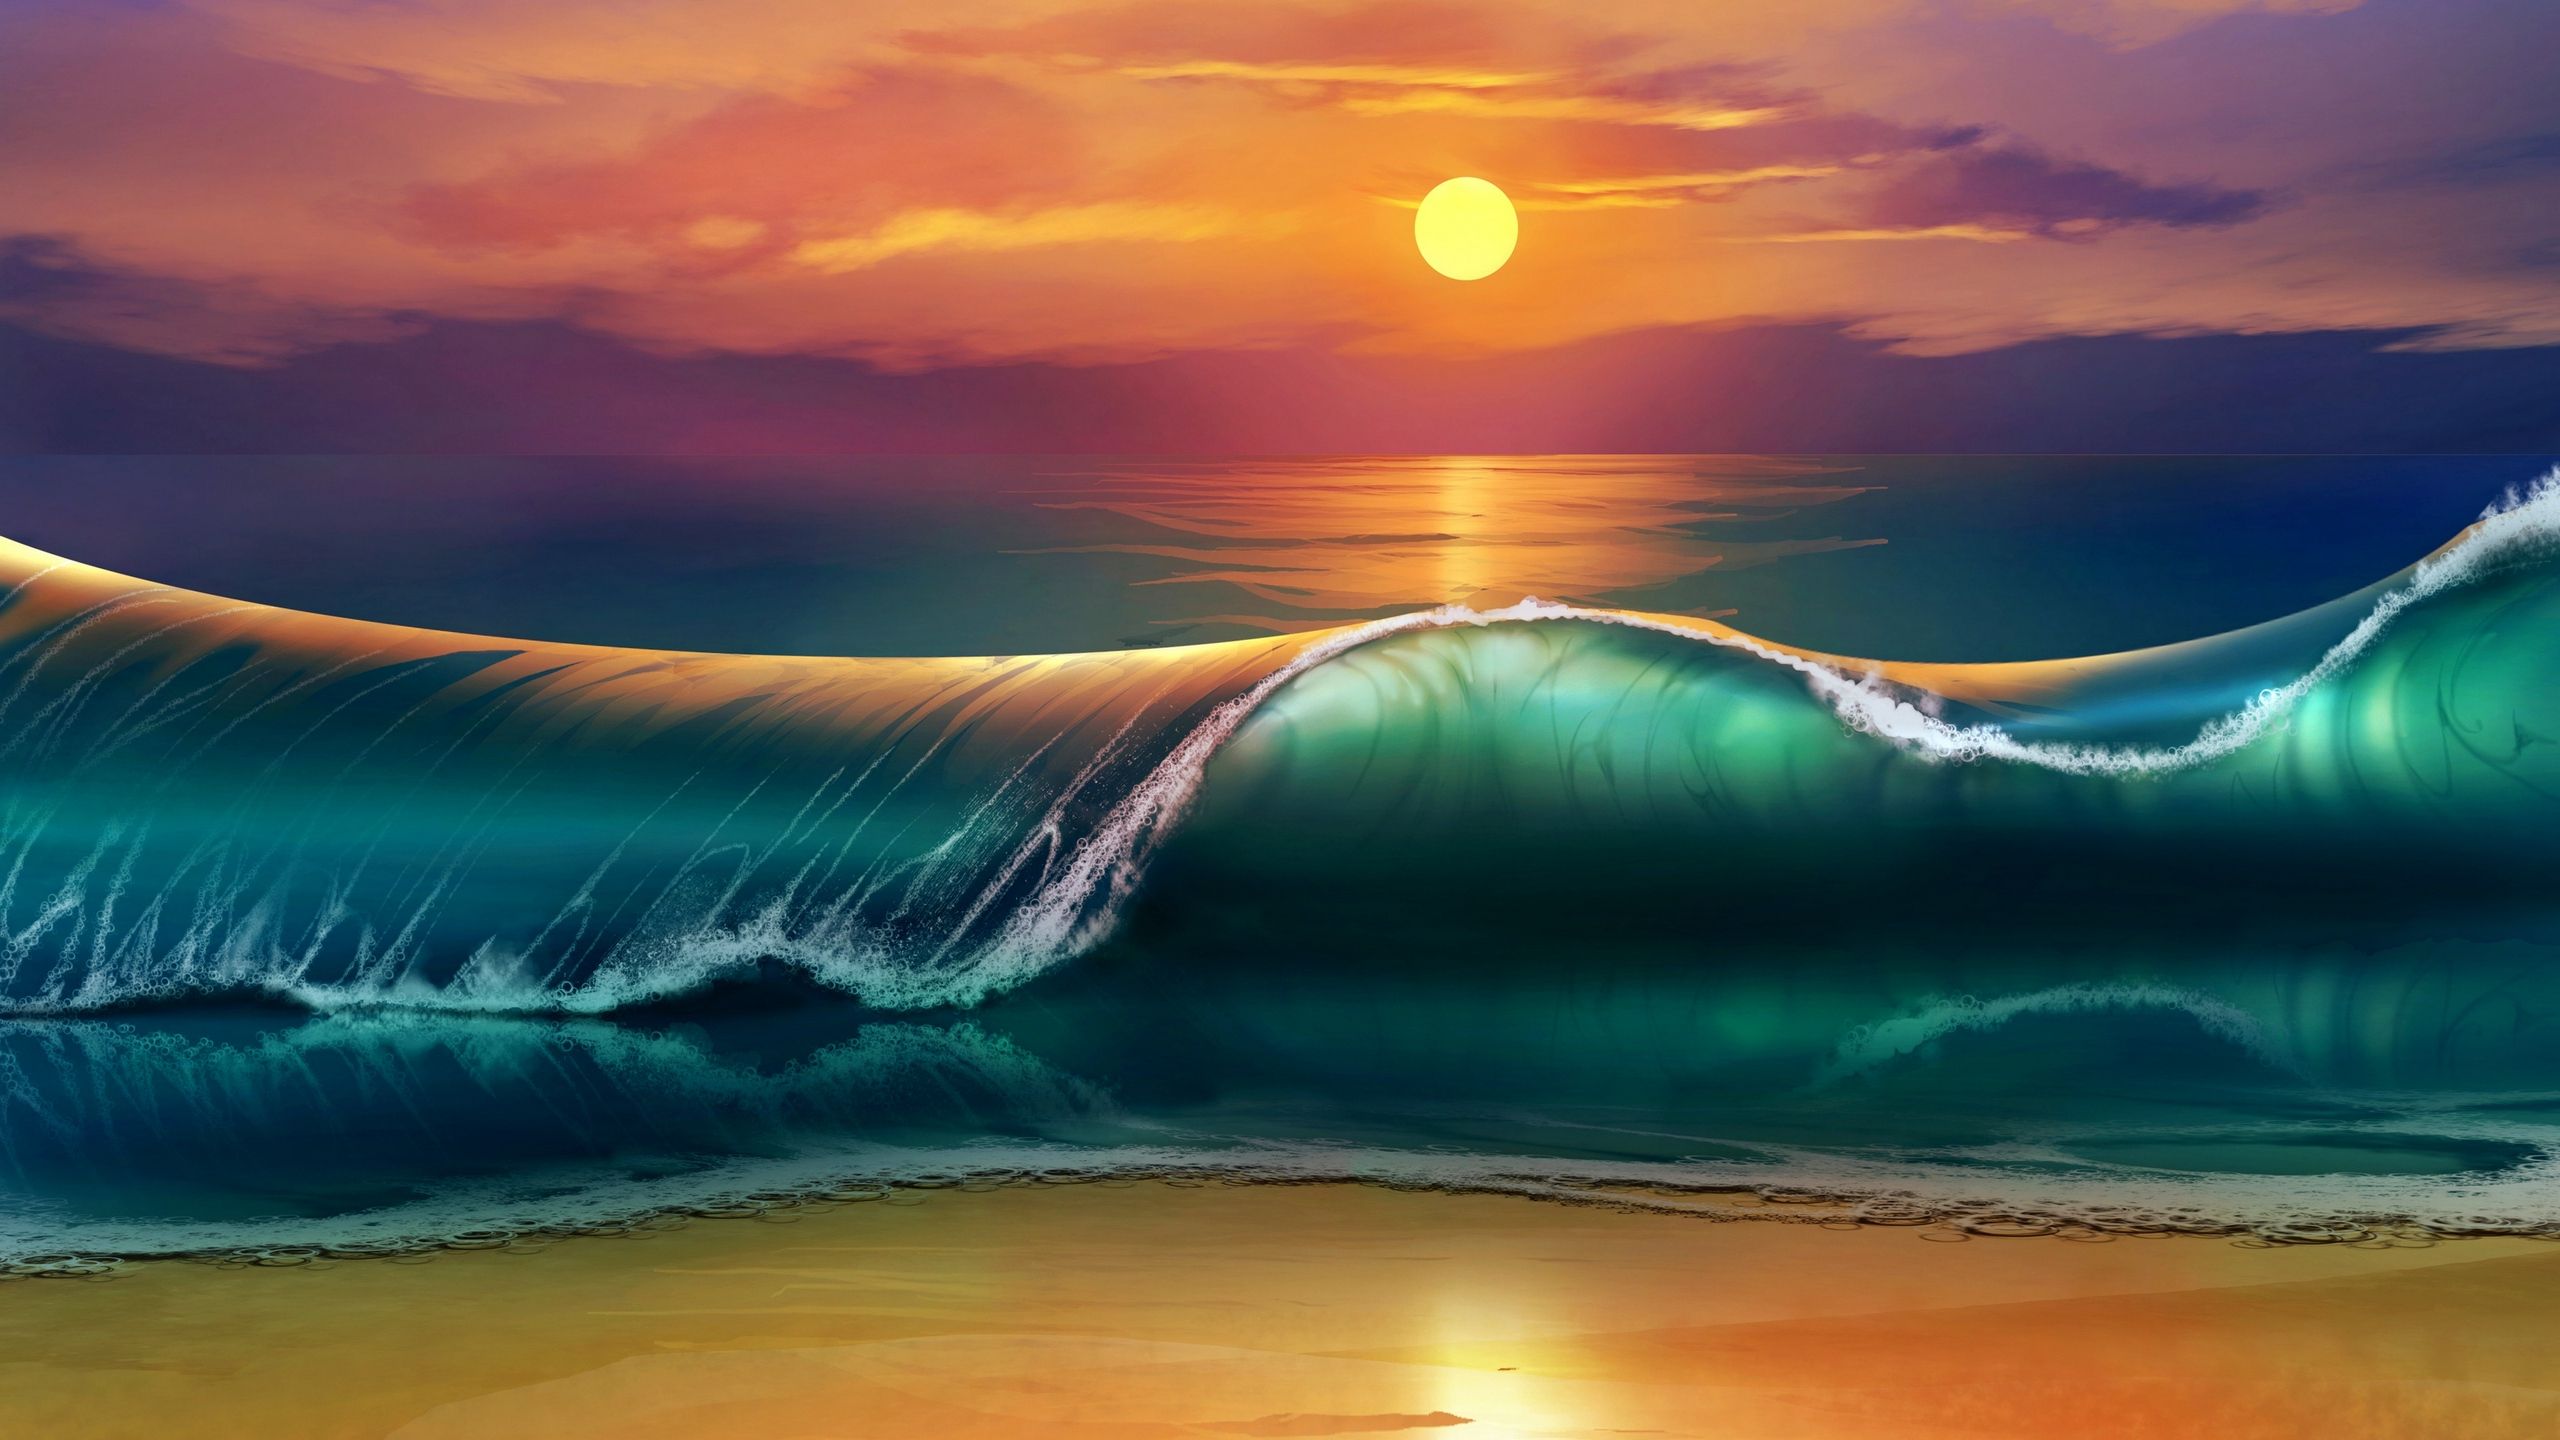 Download wallpaper 2560x1440 art, sunset, beach, sea, waves